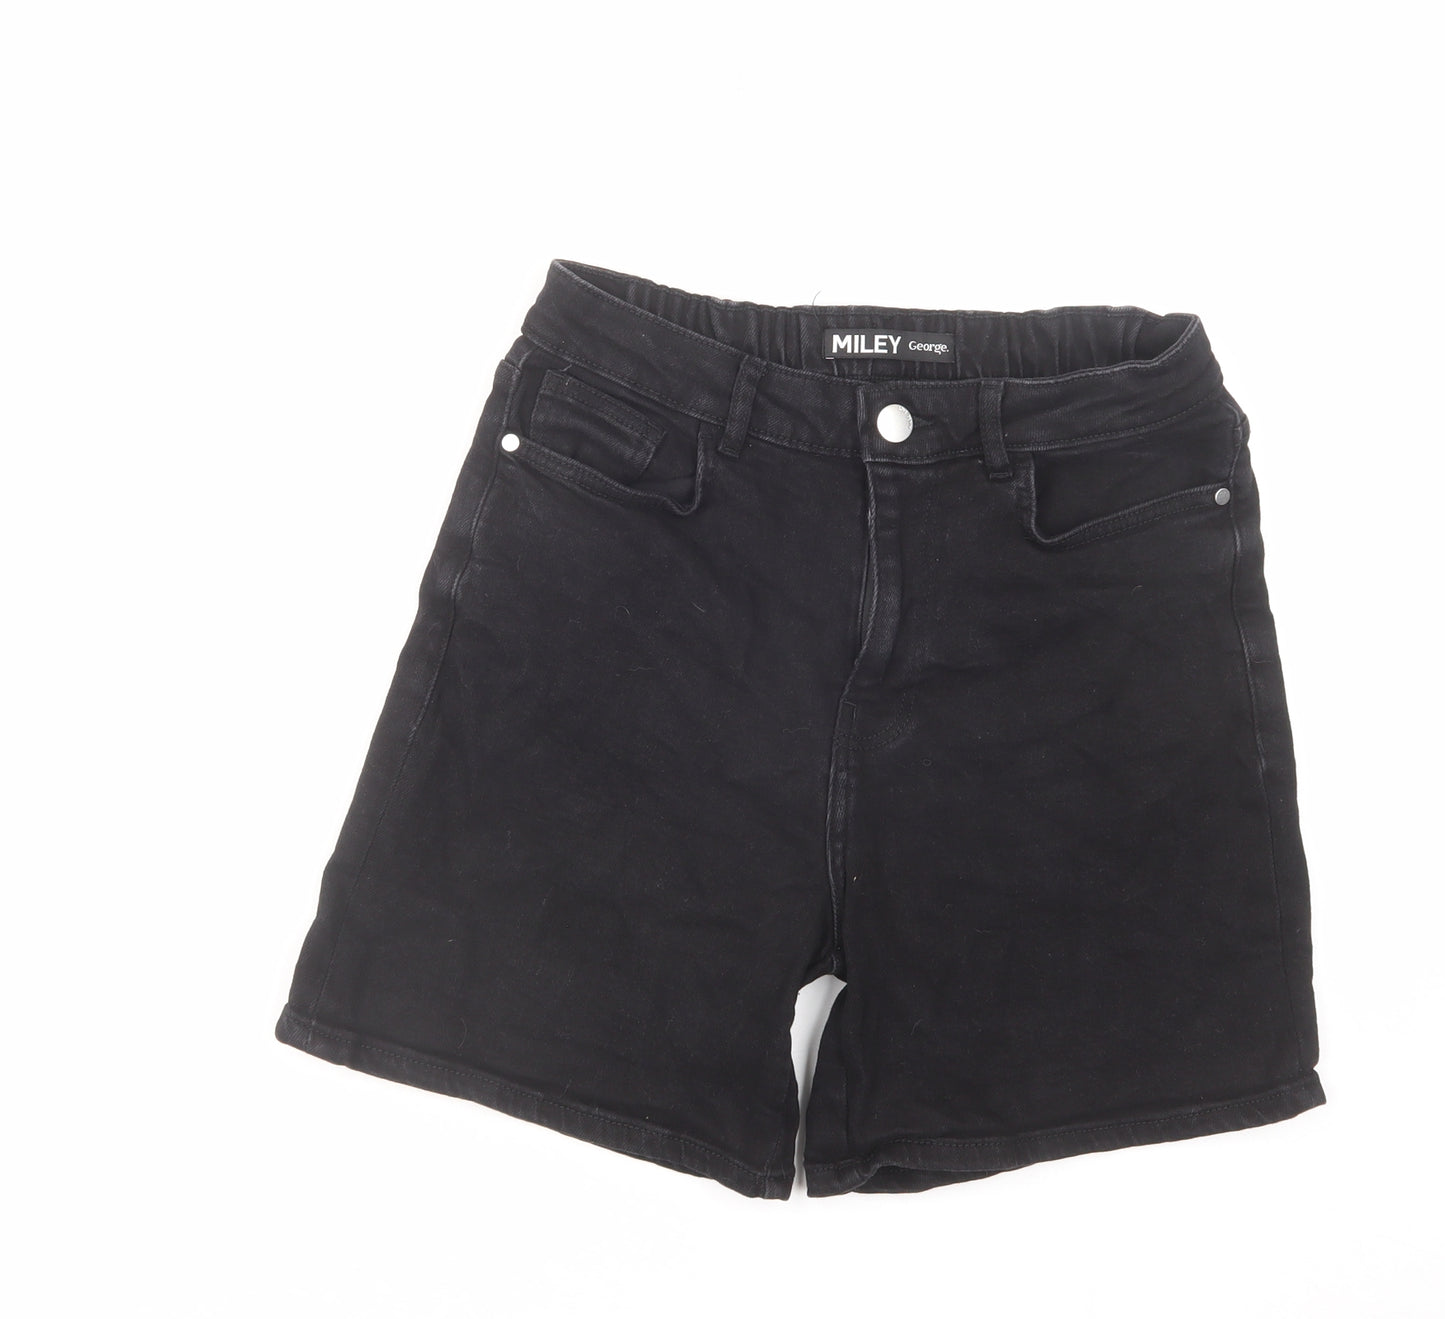 George Womens Black Cotton Boyfriend Shorts Size 12 L5 in Regular Zip